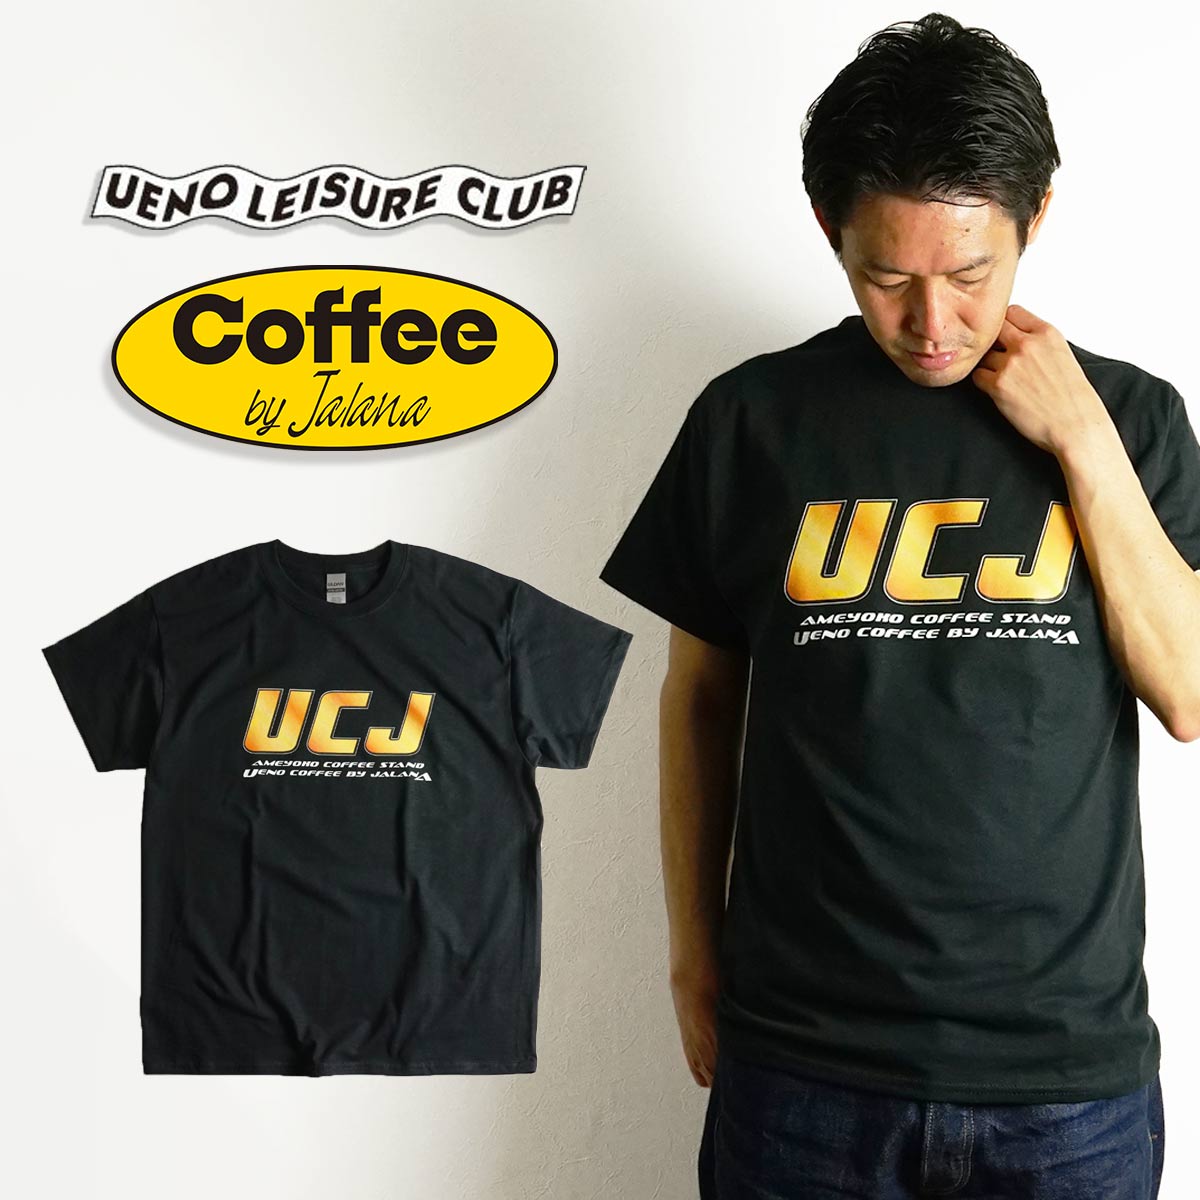 【クーポン配布中】ウエノレジャークラブ UENO LEISURE CLUB Coffee by Jalana UCJ 半袖 Tシャツ（メンズ レディース ユニセックス M-XXXL ギルダン)